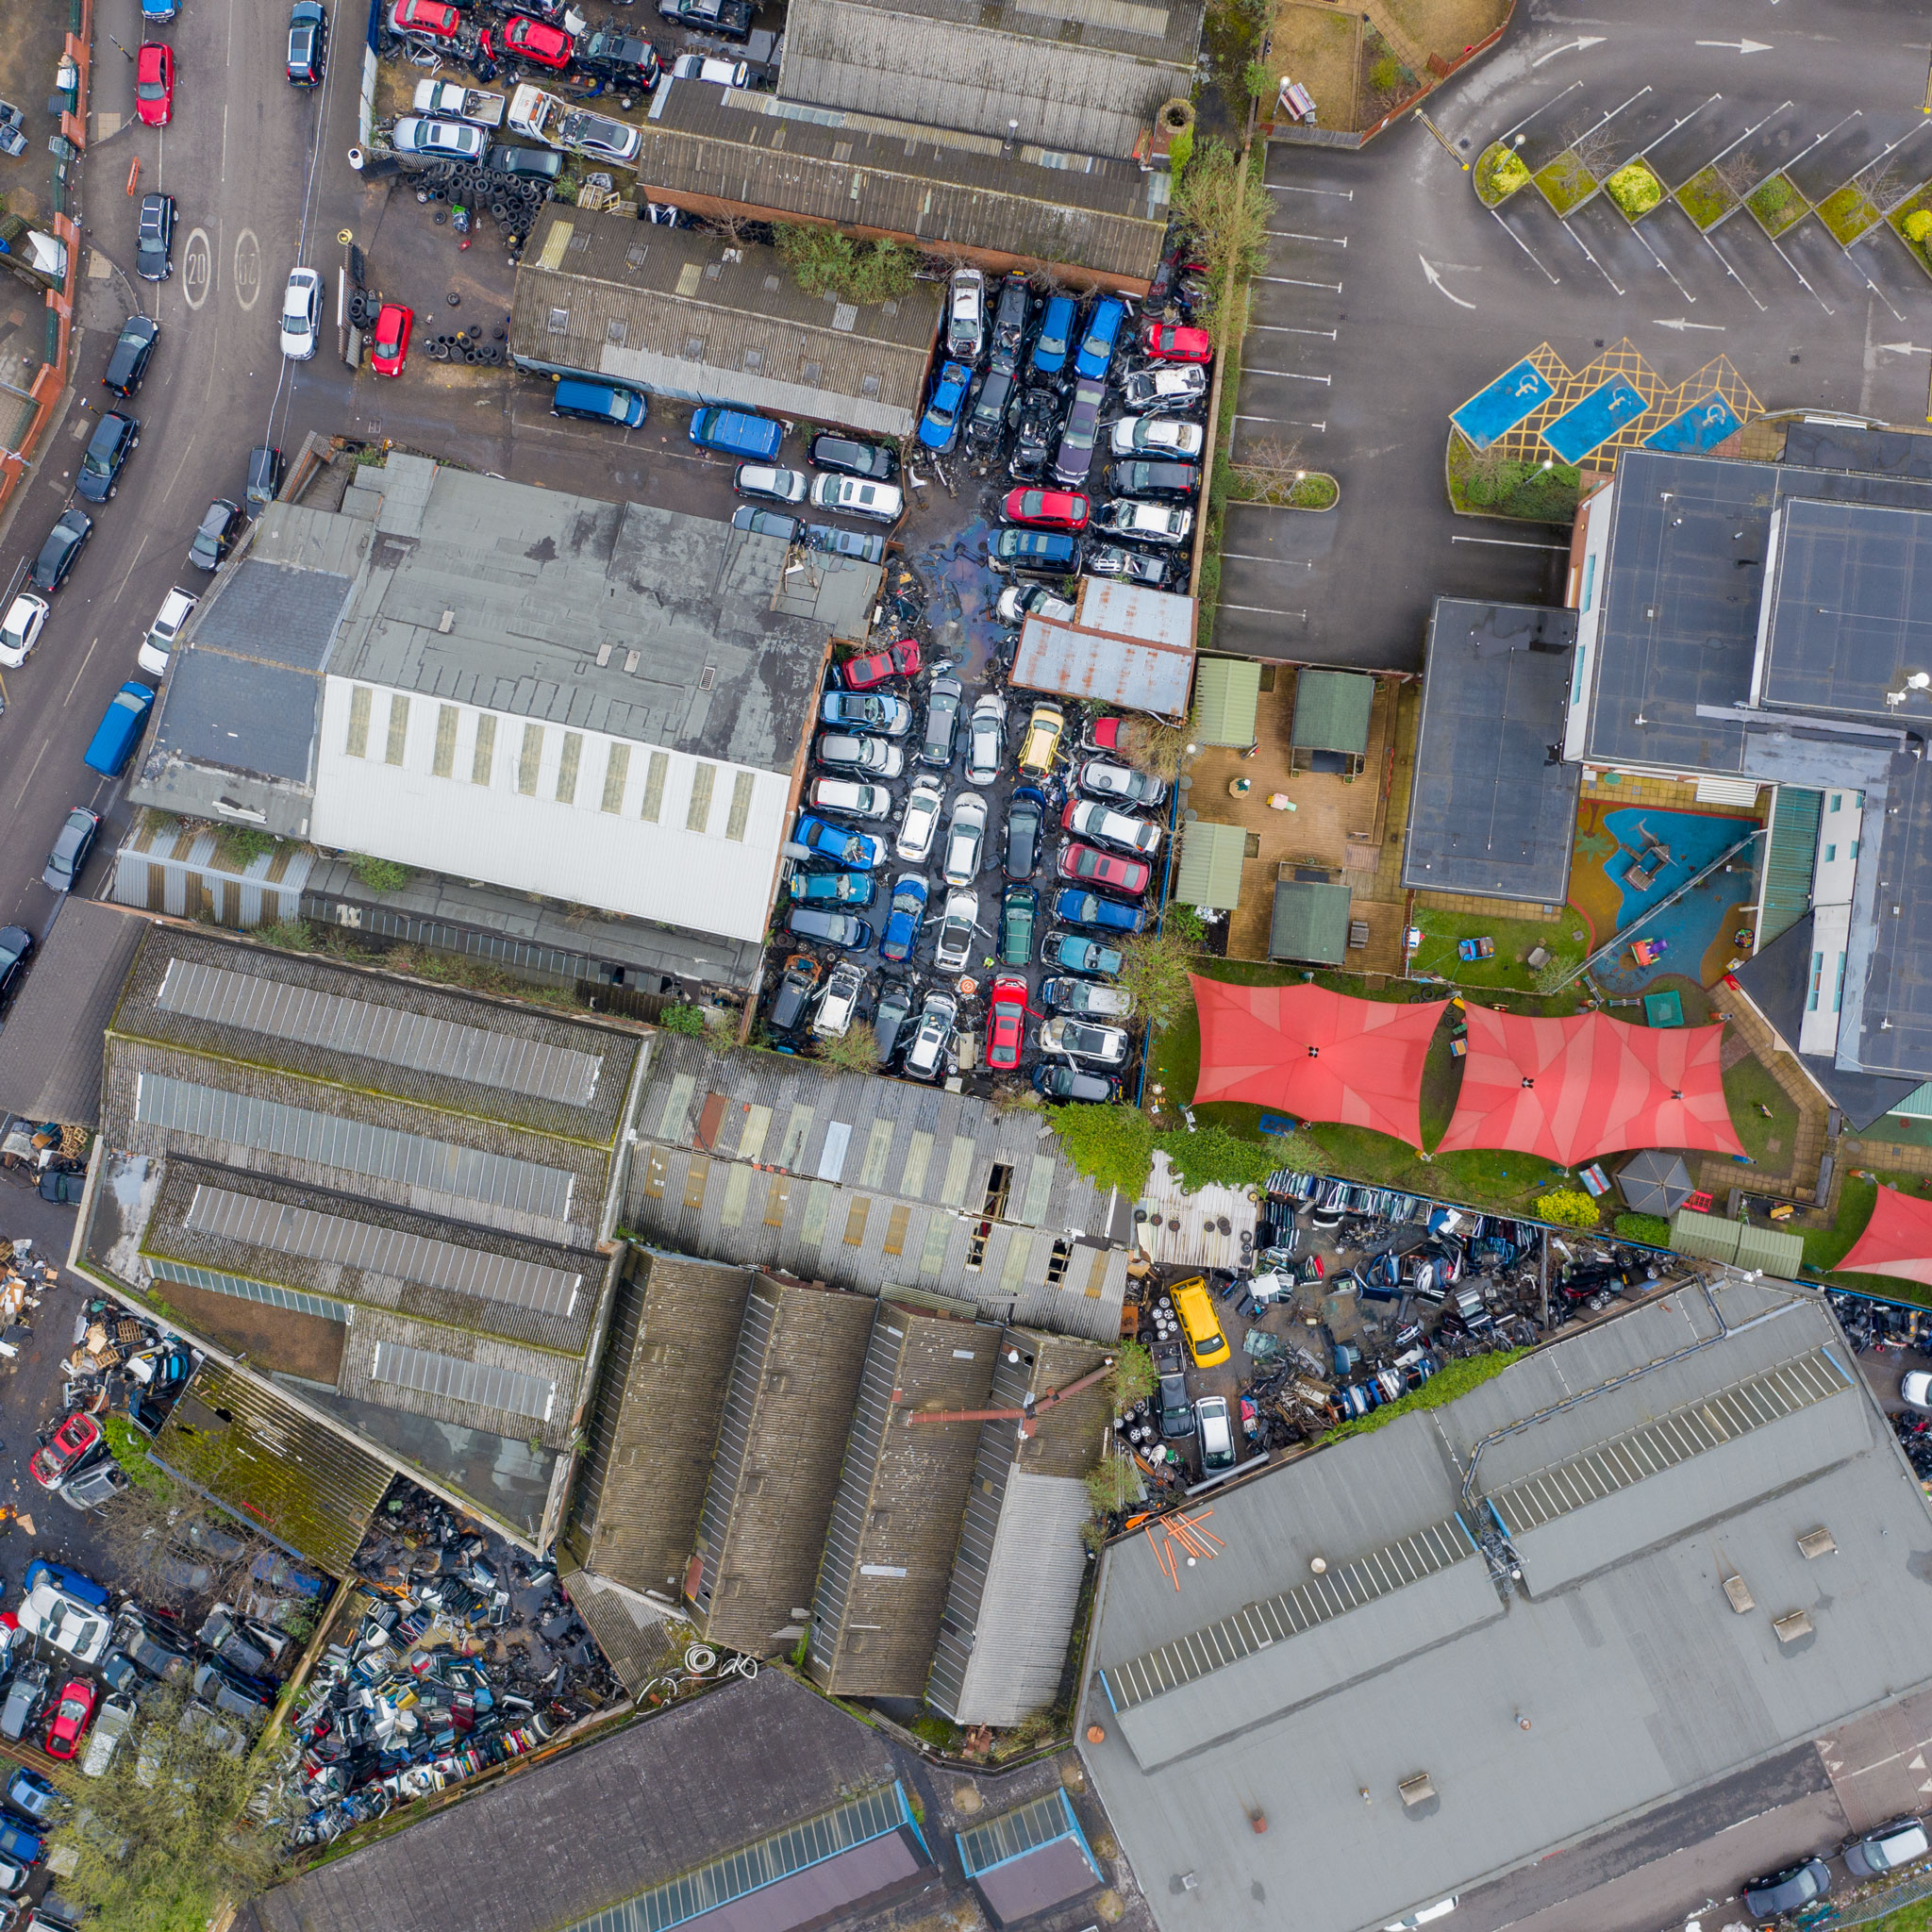 A scrap yard in Birmingham.